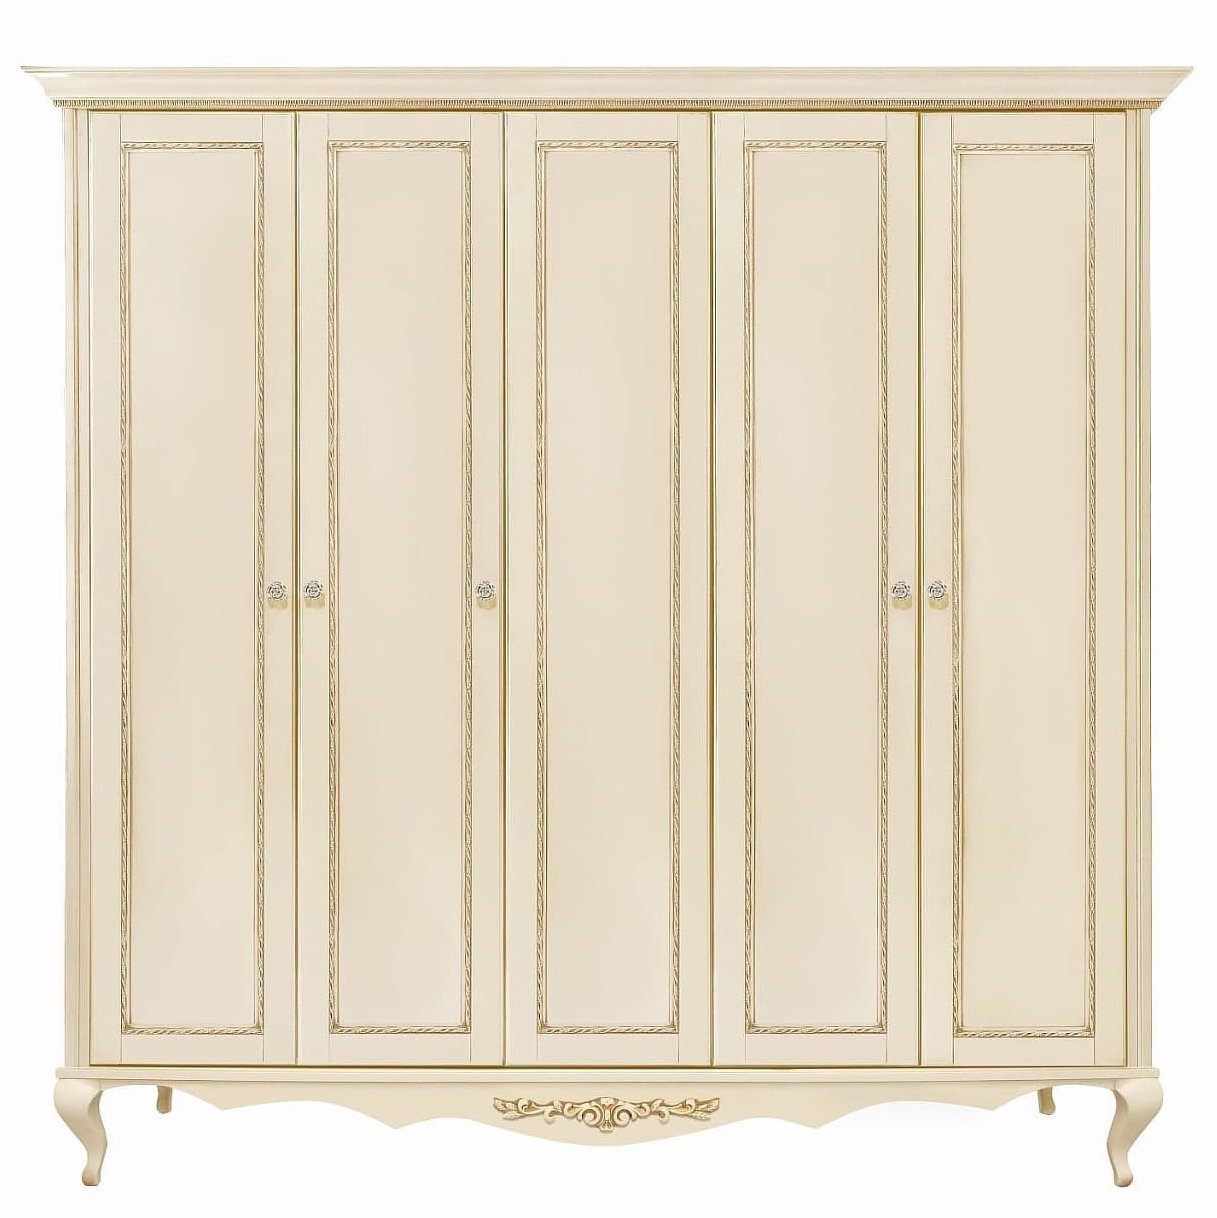 Шкаф платяной Timber Неаполь, 5-ти дверный 249x65x227 см, цвет: ваниль с золотом (Т-525Д/VO)Т-525Д